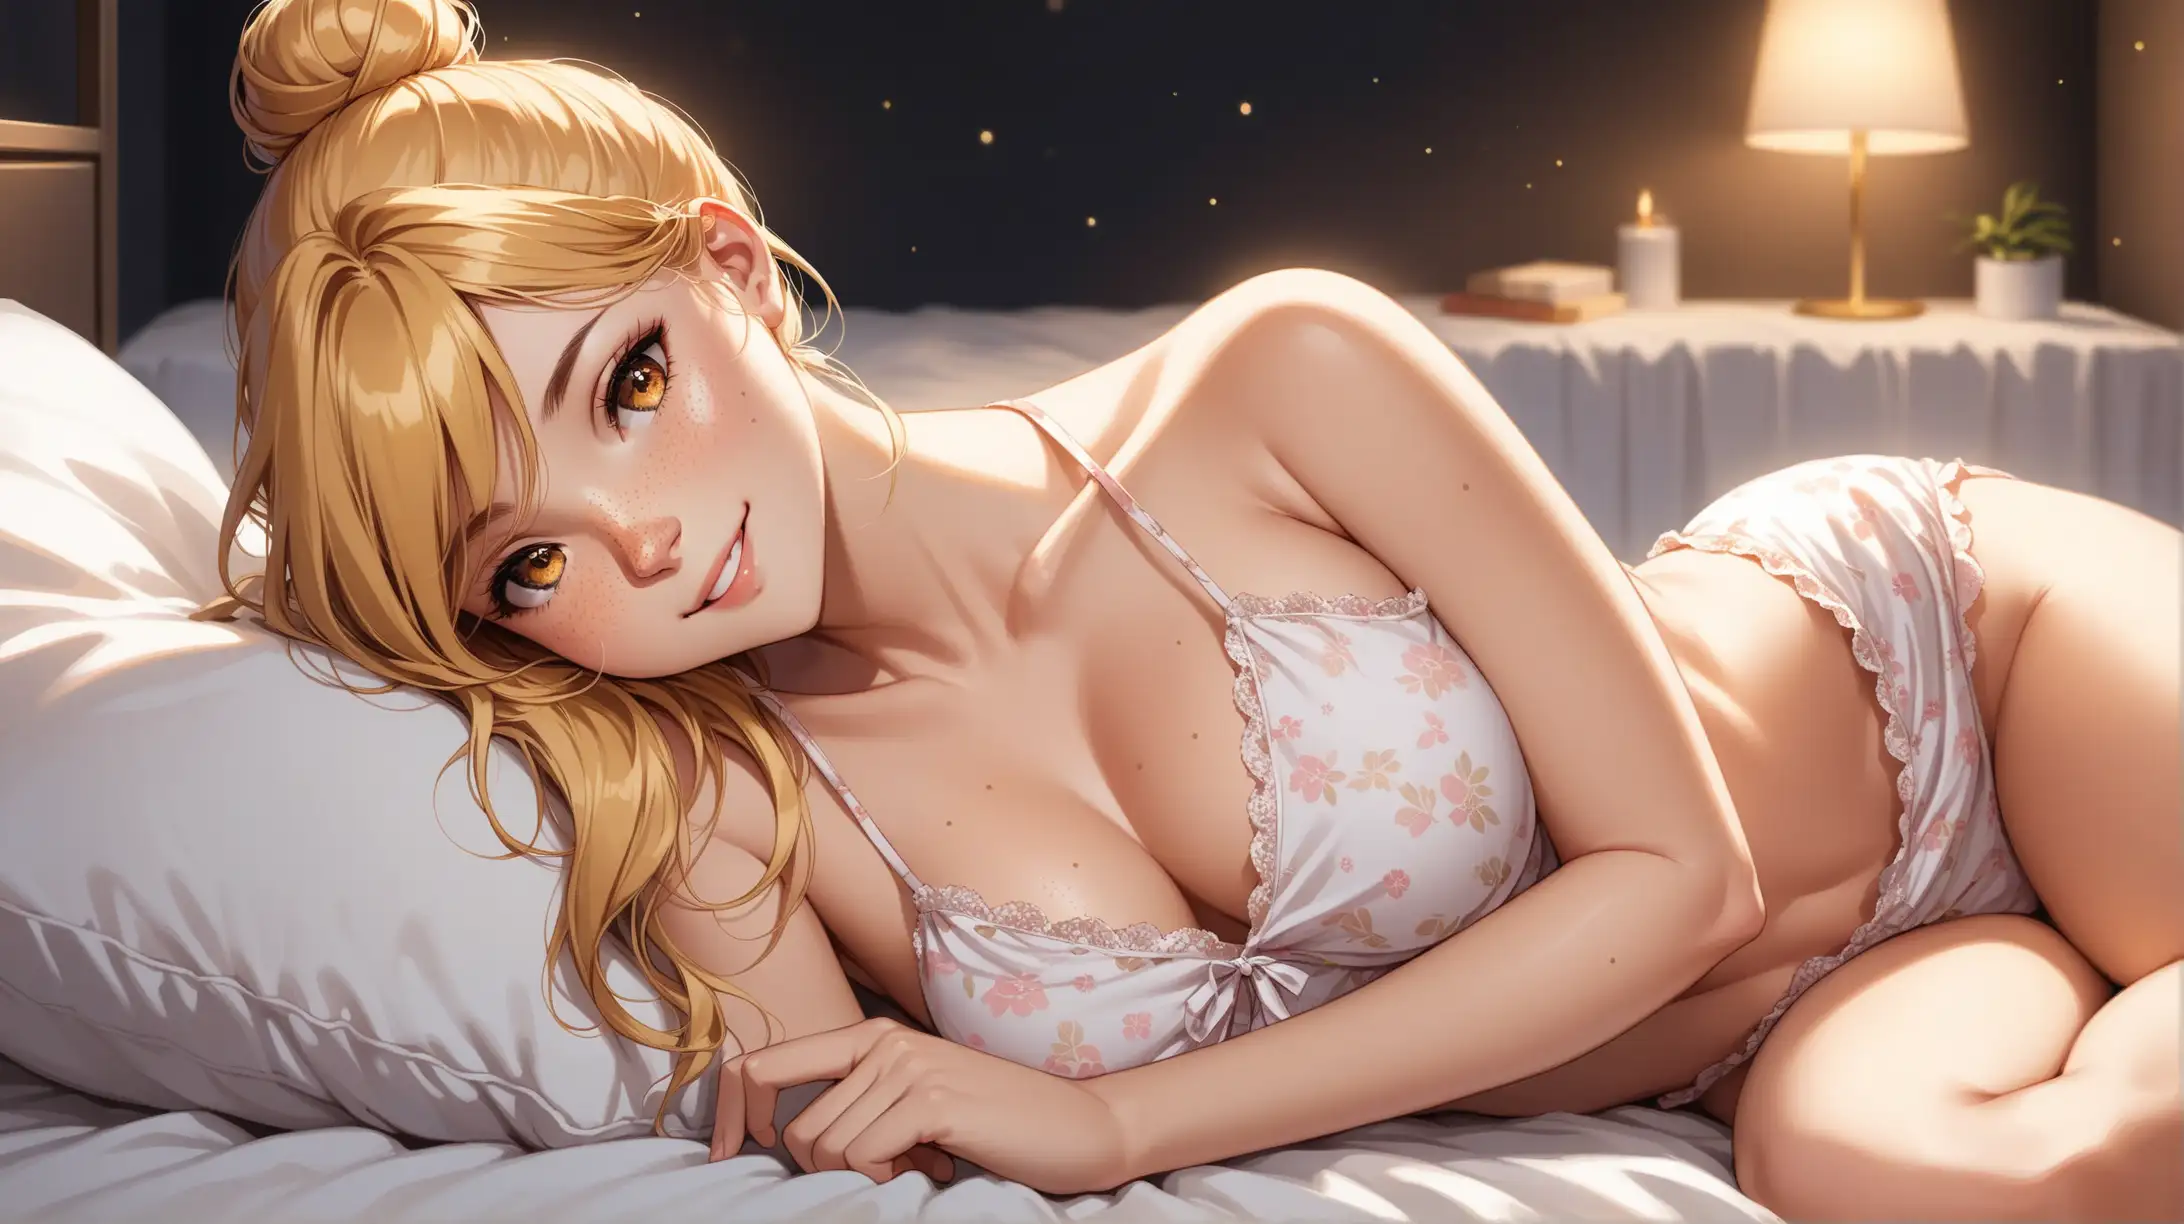 Seductive Blonde Woman in Sleepwear Poses in Dimly Lit Bedroom